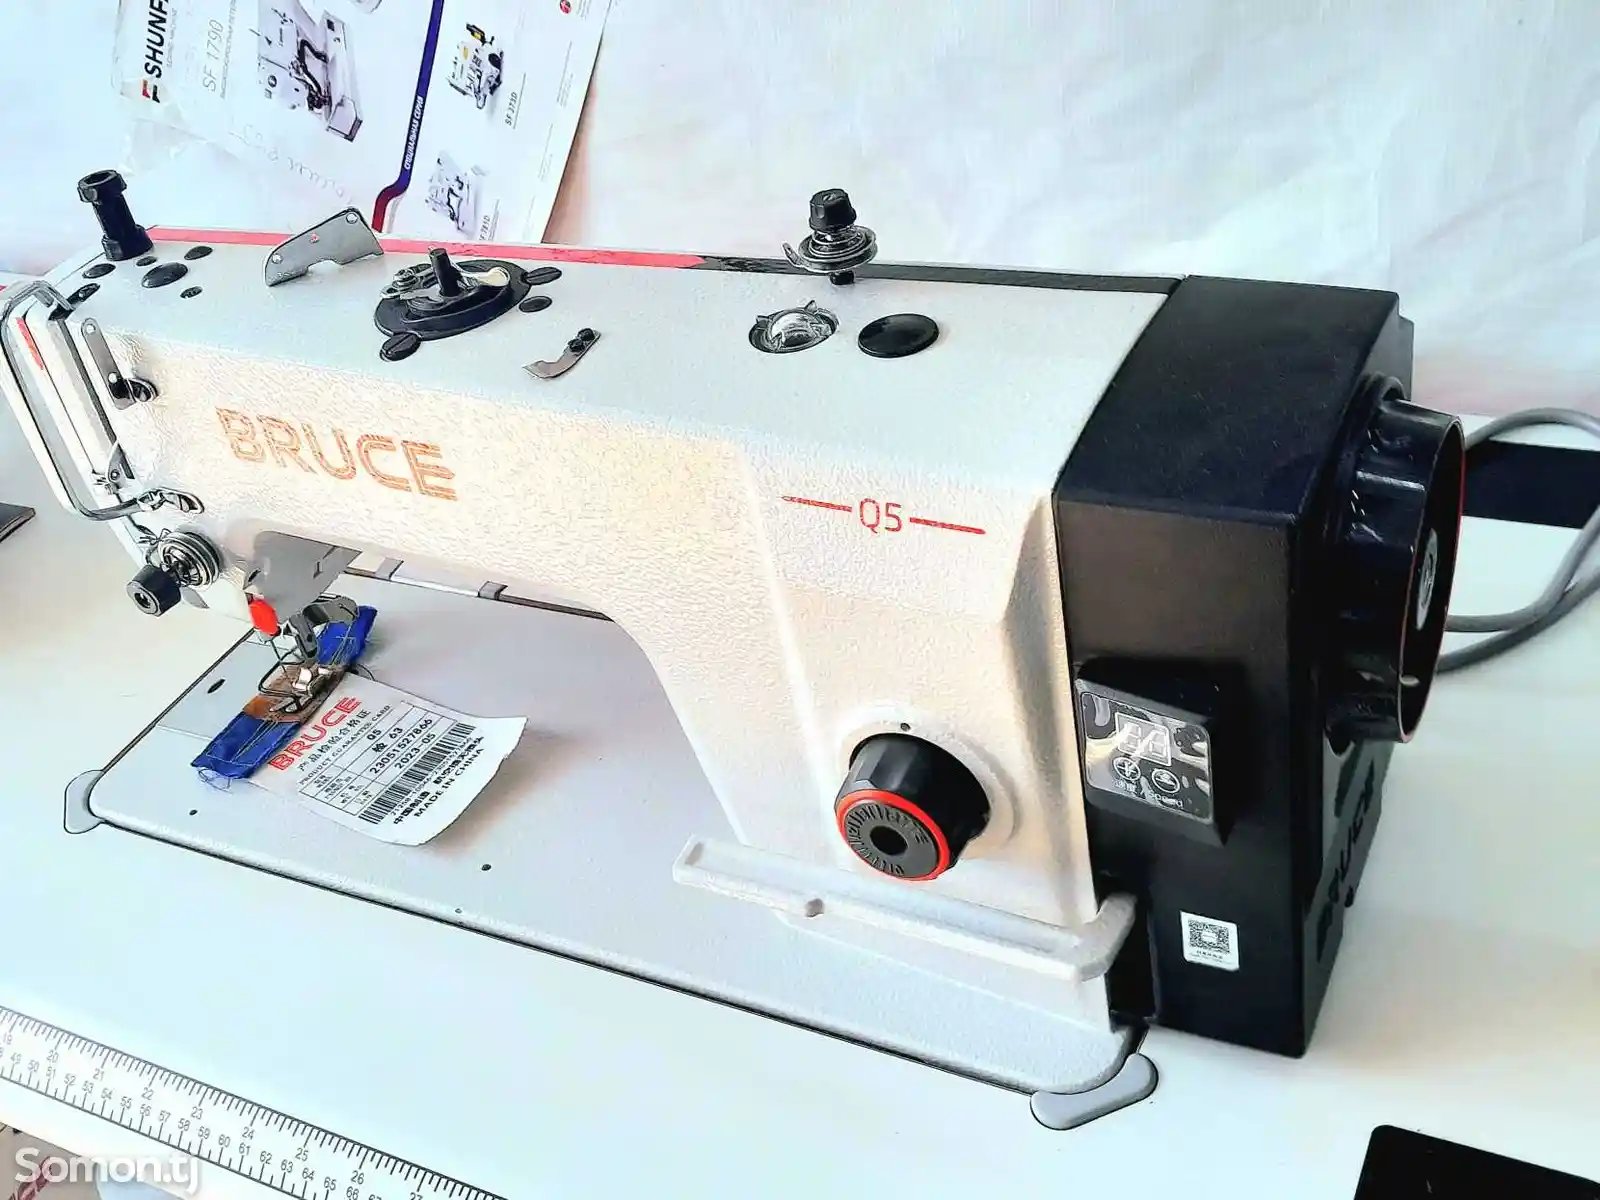 Швейная машина Bruce Q5-3